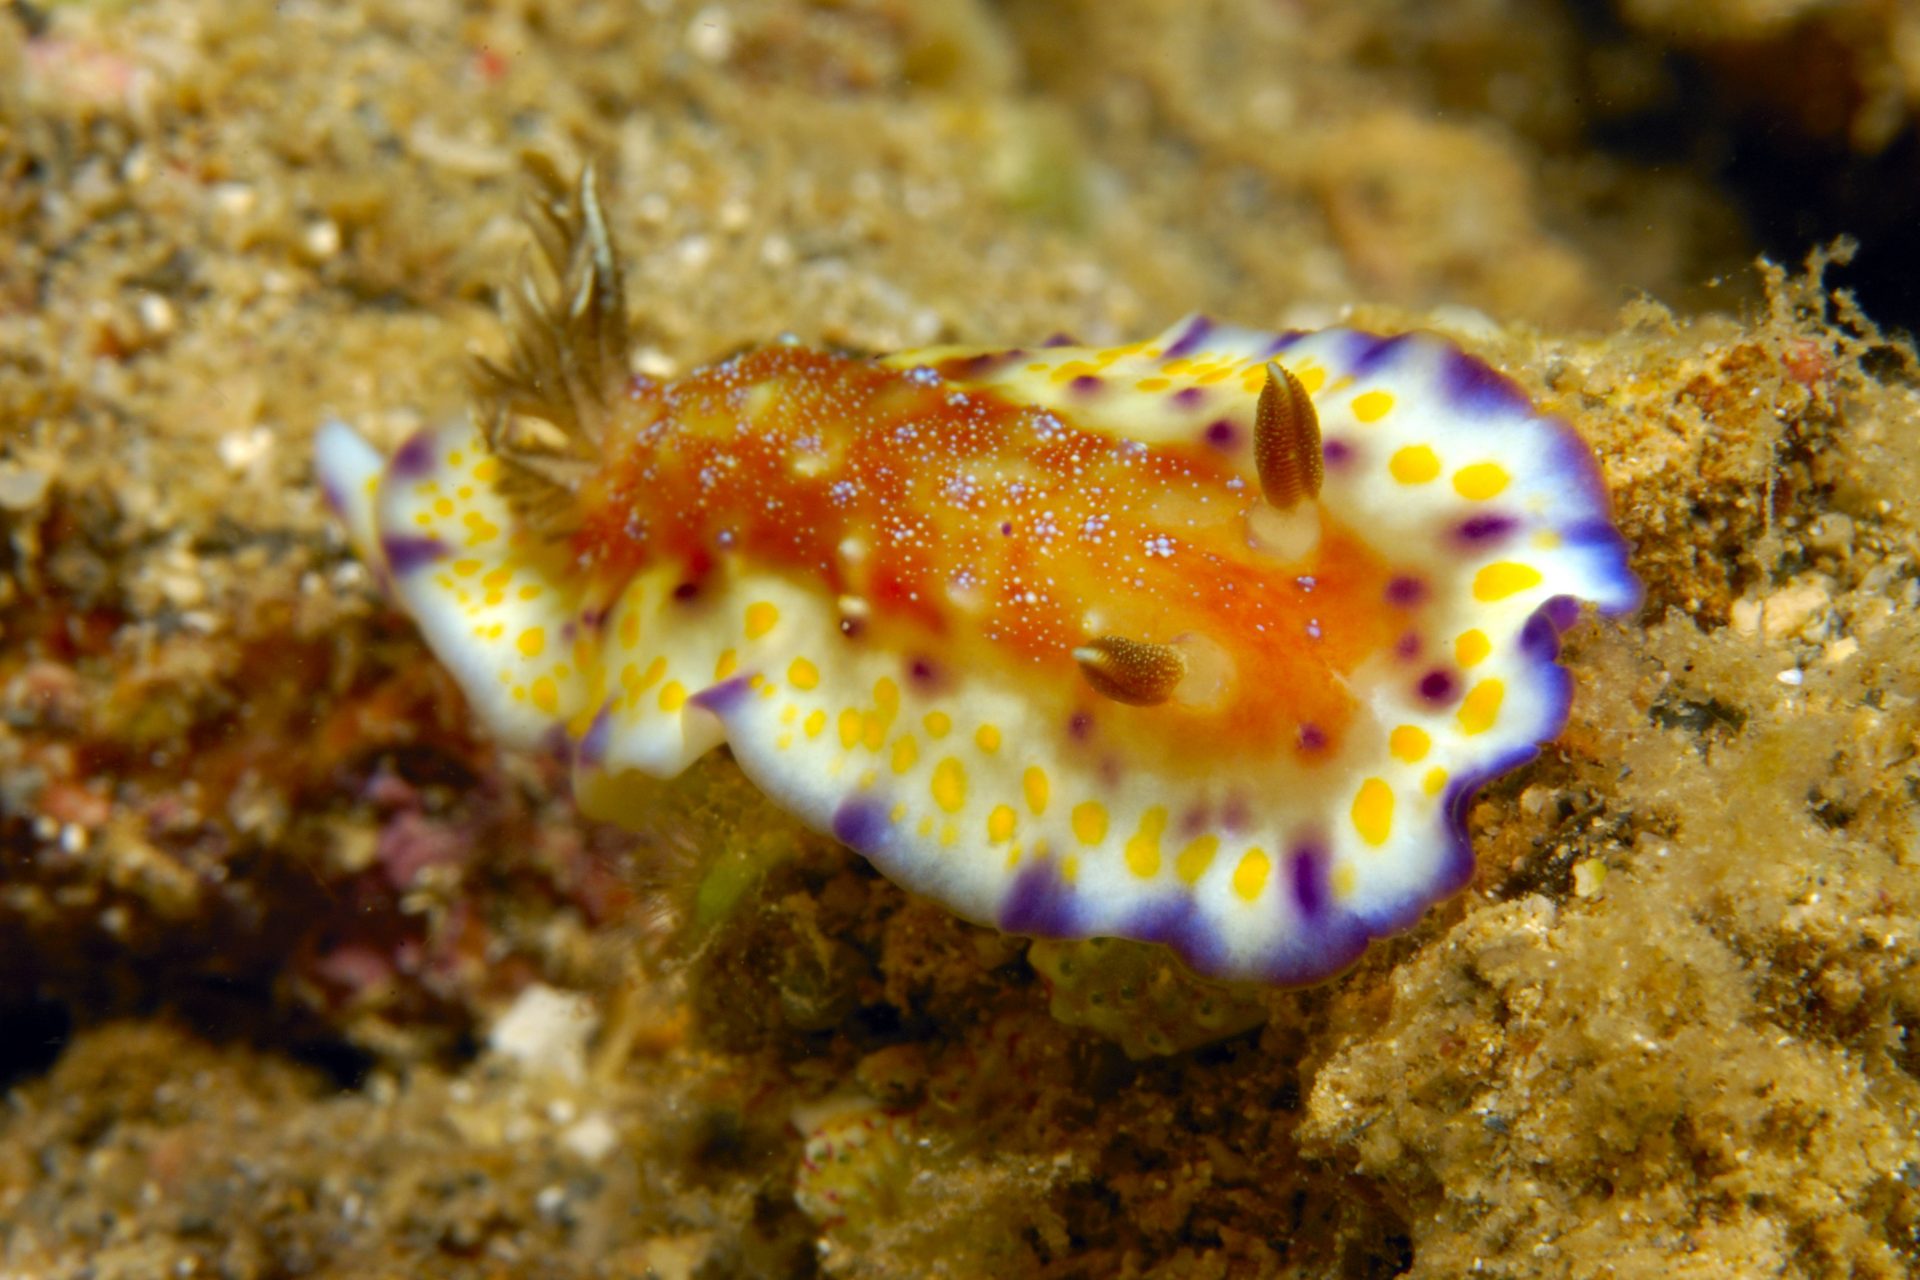 Red catfish sea slug